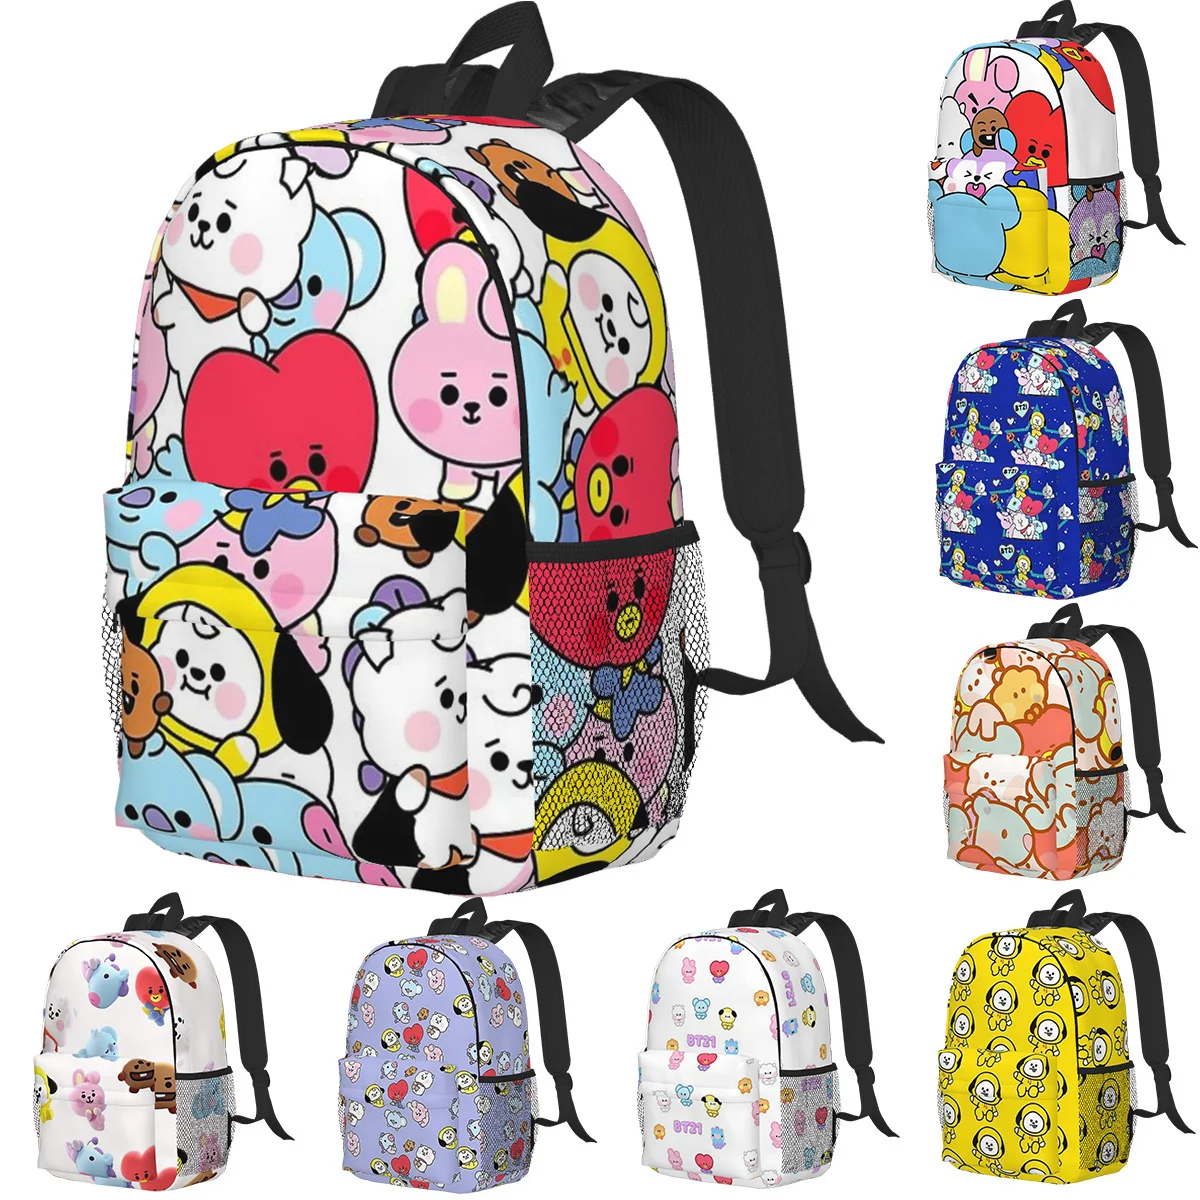 

Детские рюкзаки BT21 с рисунком, повседневные школьные ранцы для подростков, дорожный ранец на плечо, вместительная сумка